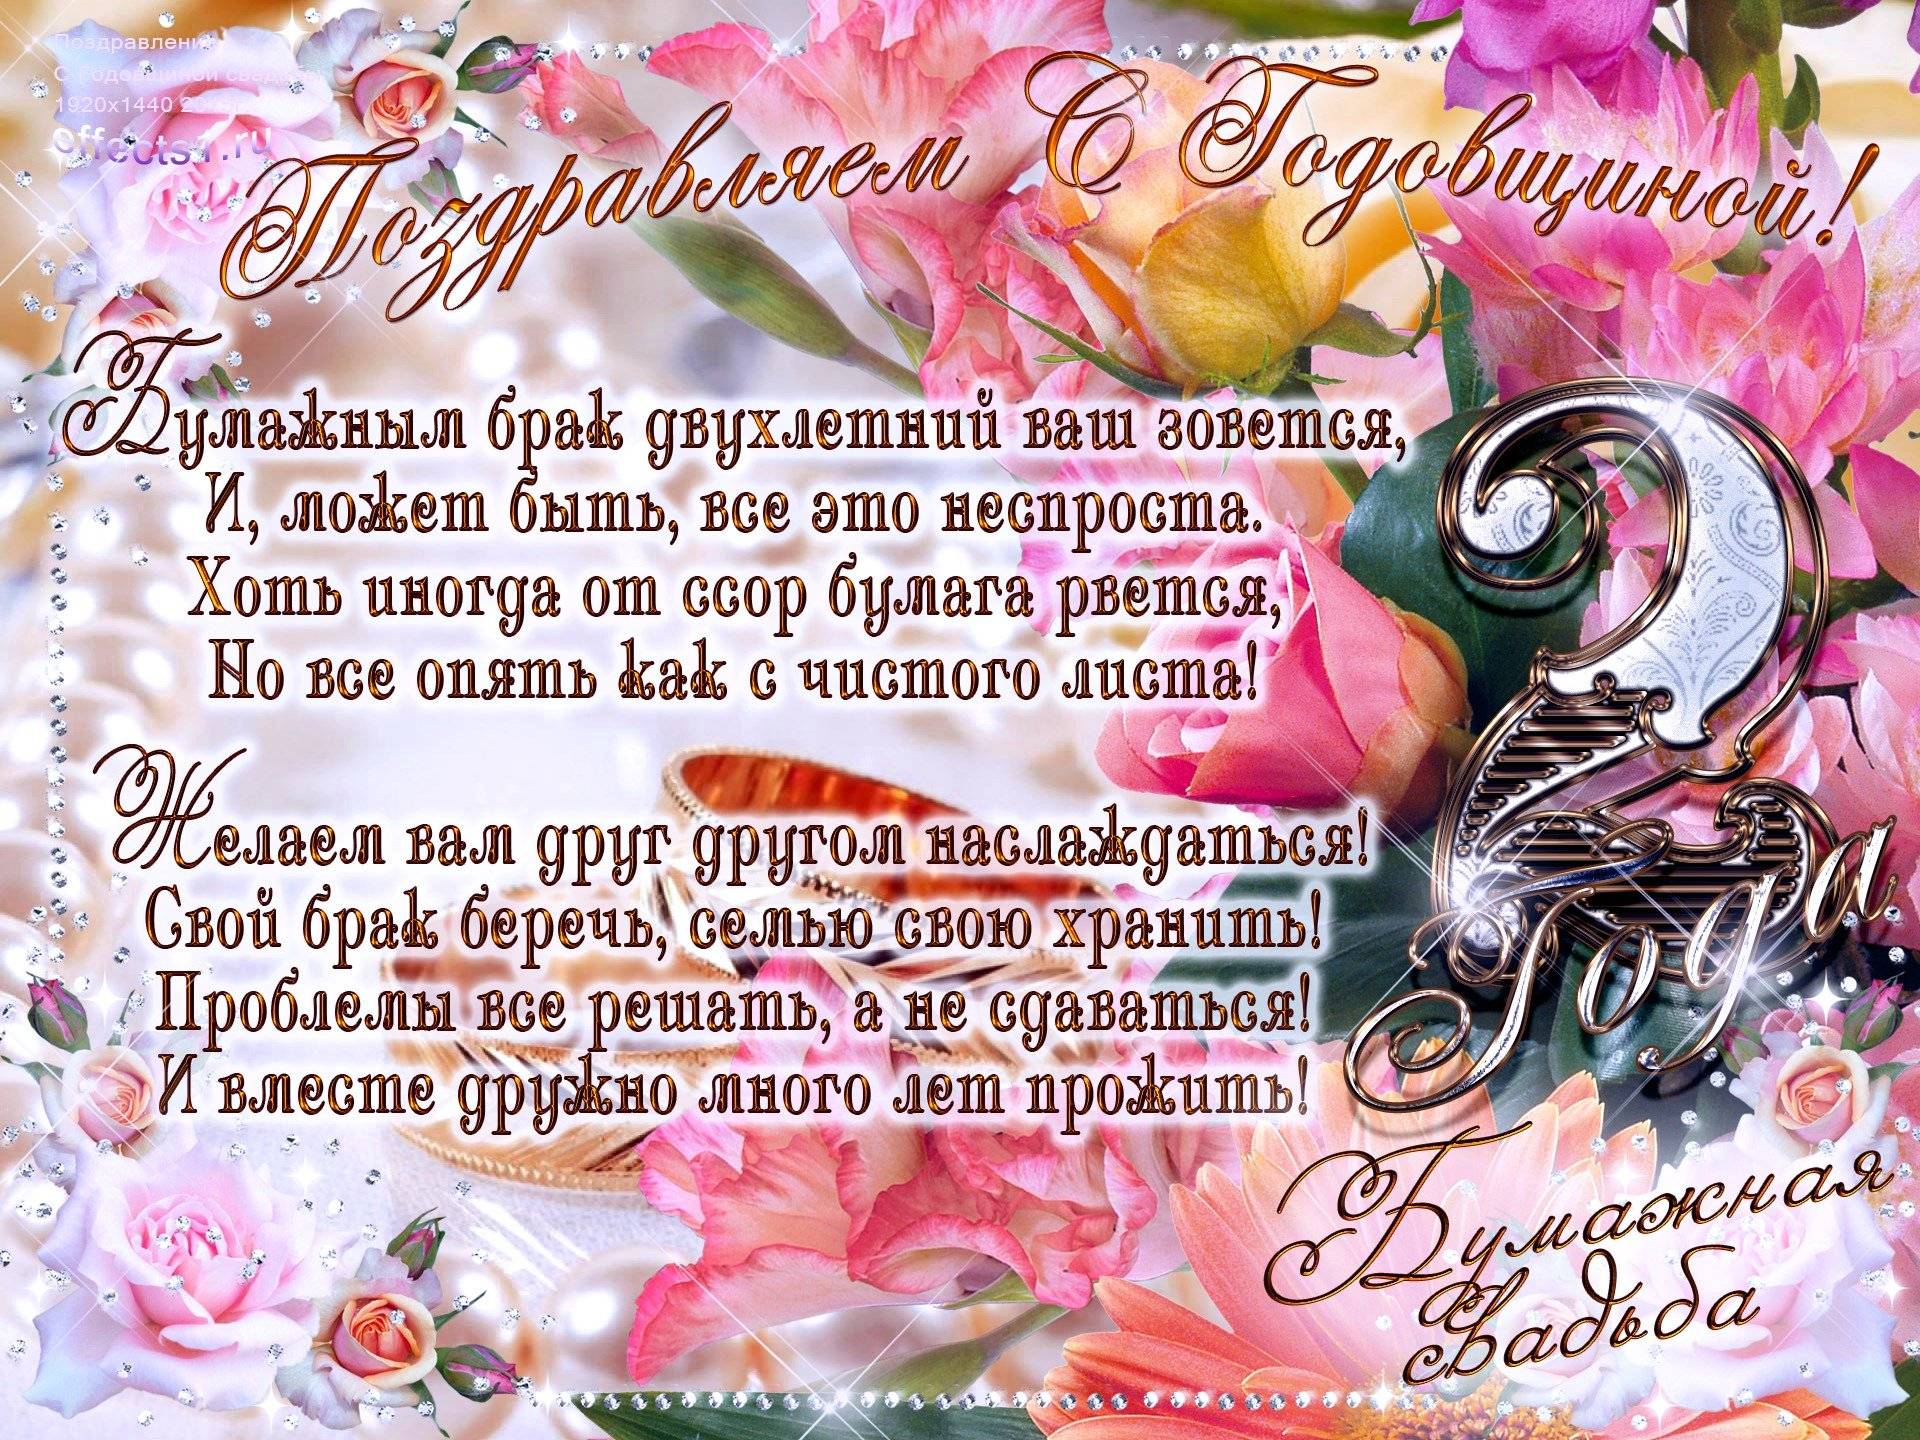 ᐉ бумажная свадьба (2 года) — какая свадьба, поздравления, стихи, проза, смс. поздравления с бумажной свадьбой - svadba-dv.ru